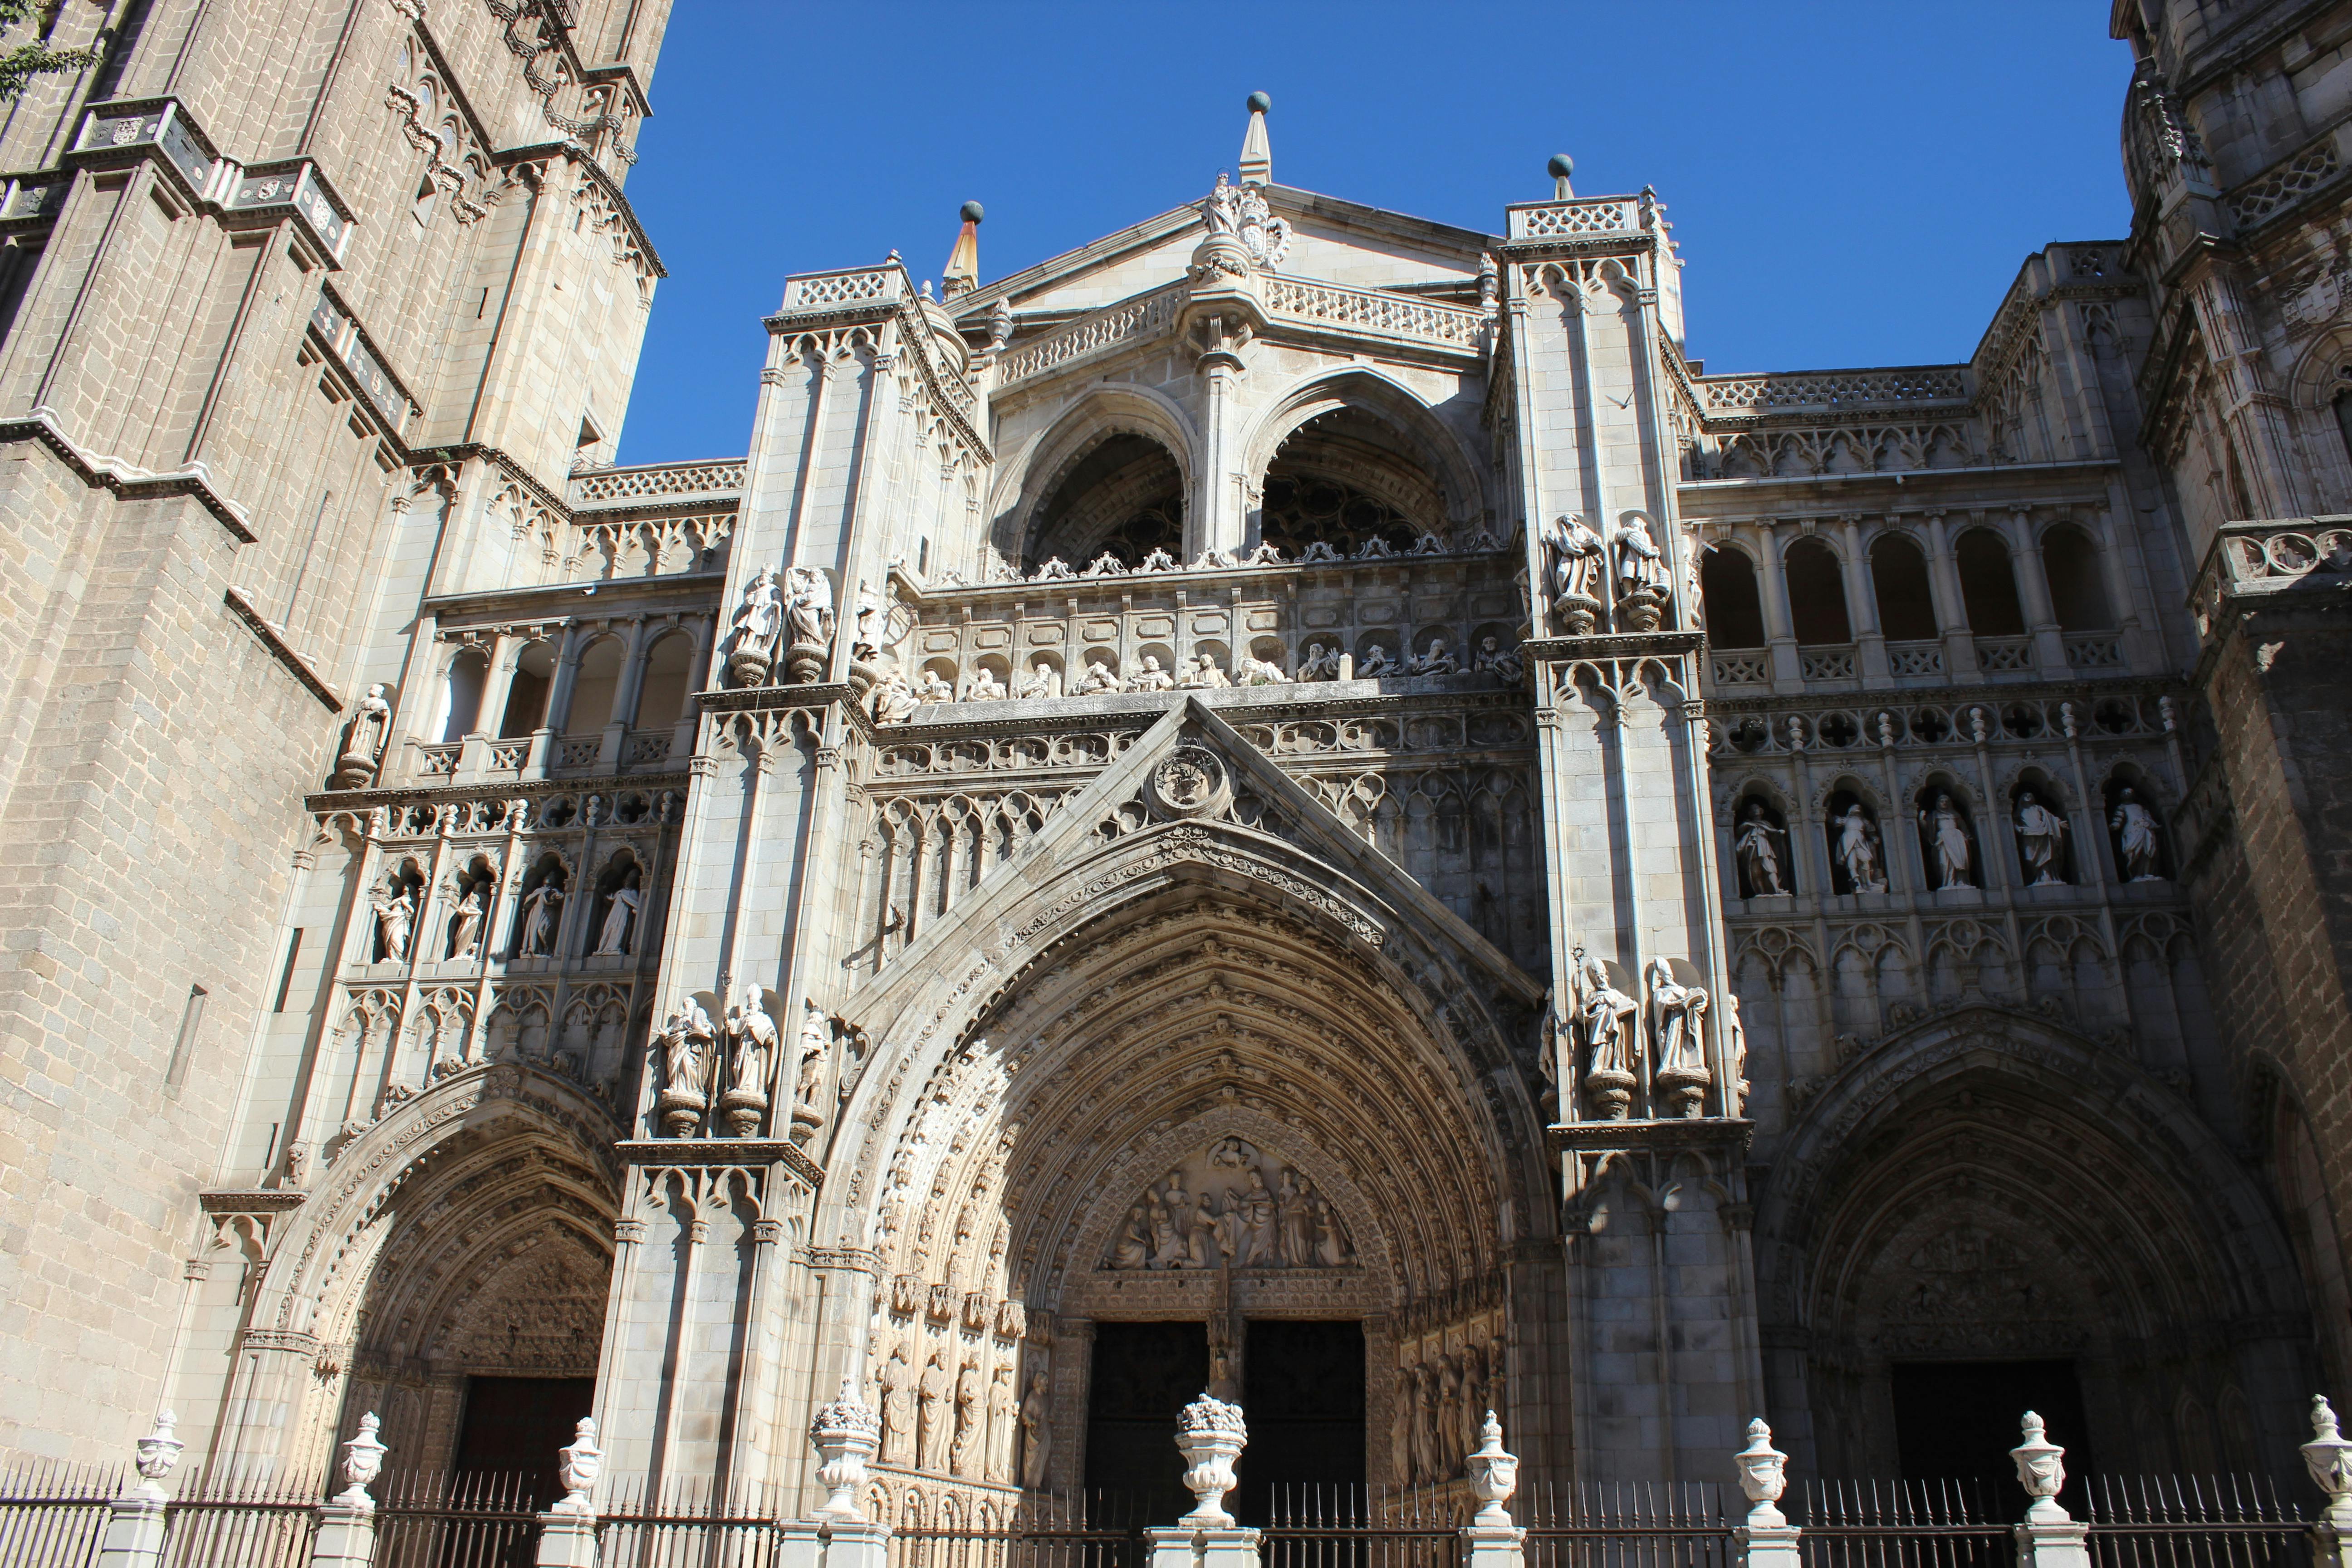 Toledo para exploradores destaca a excursão saindo de Madri